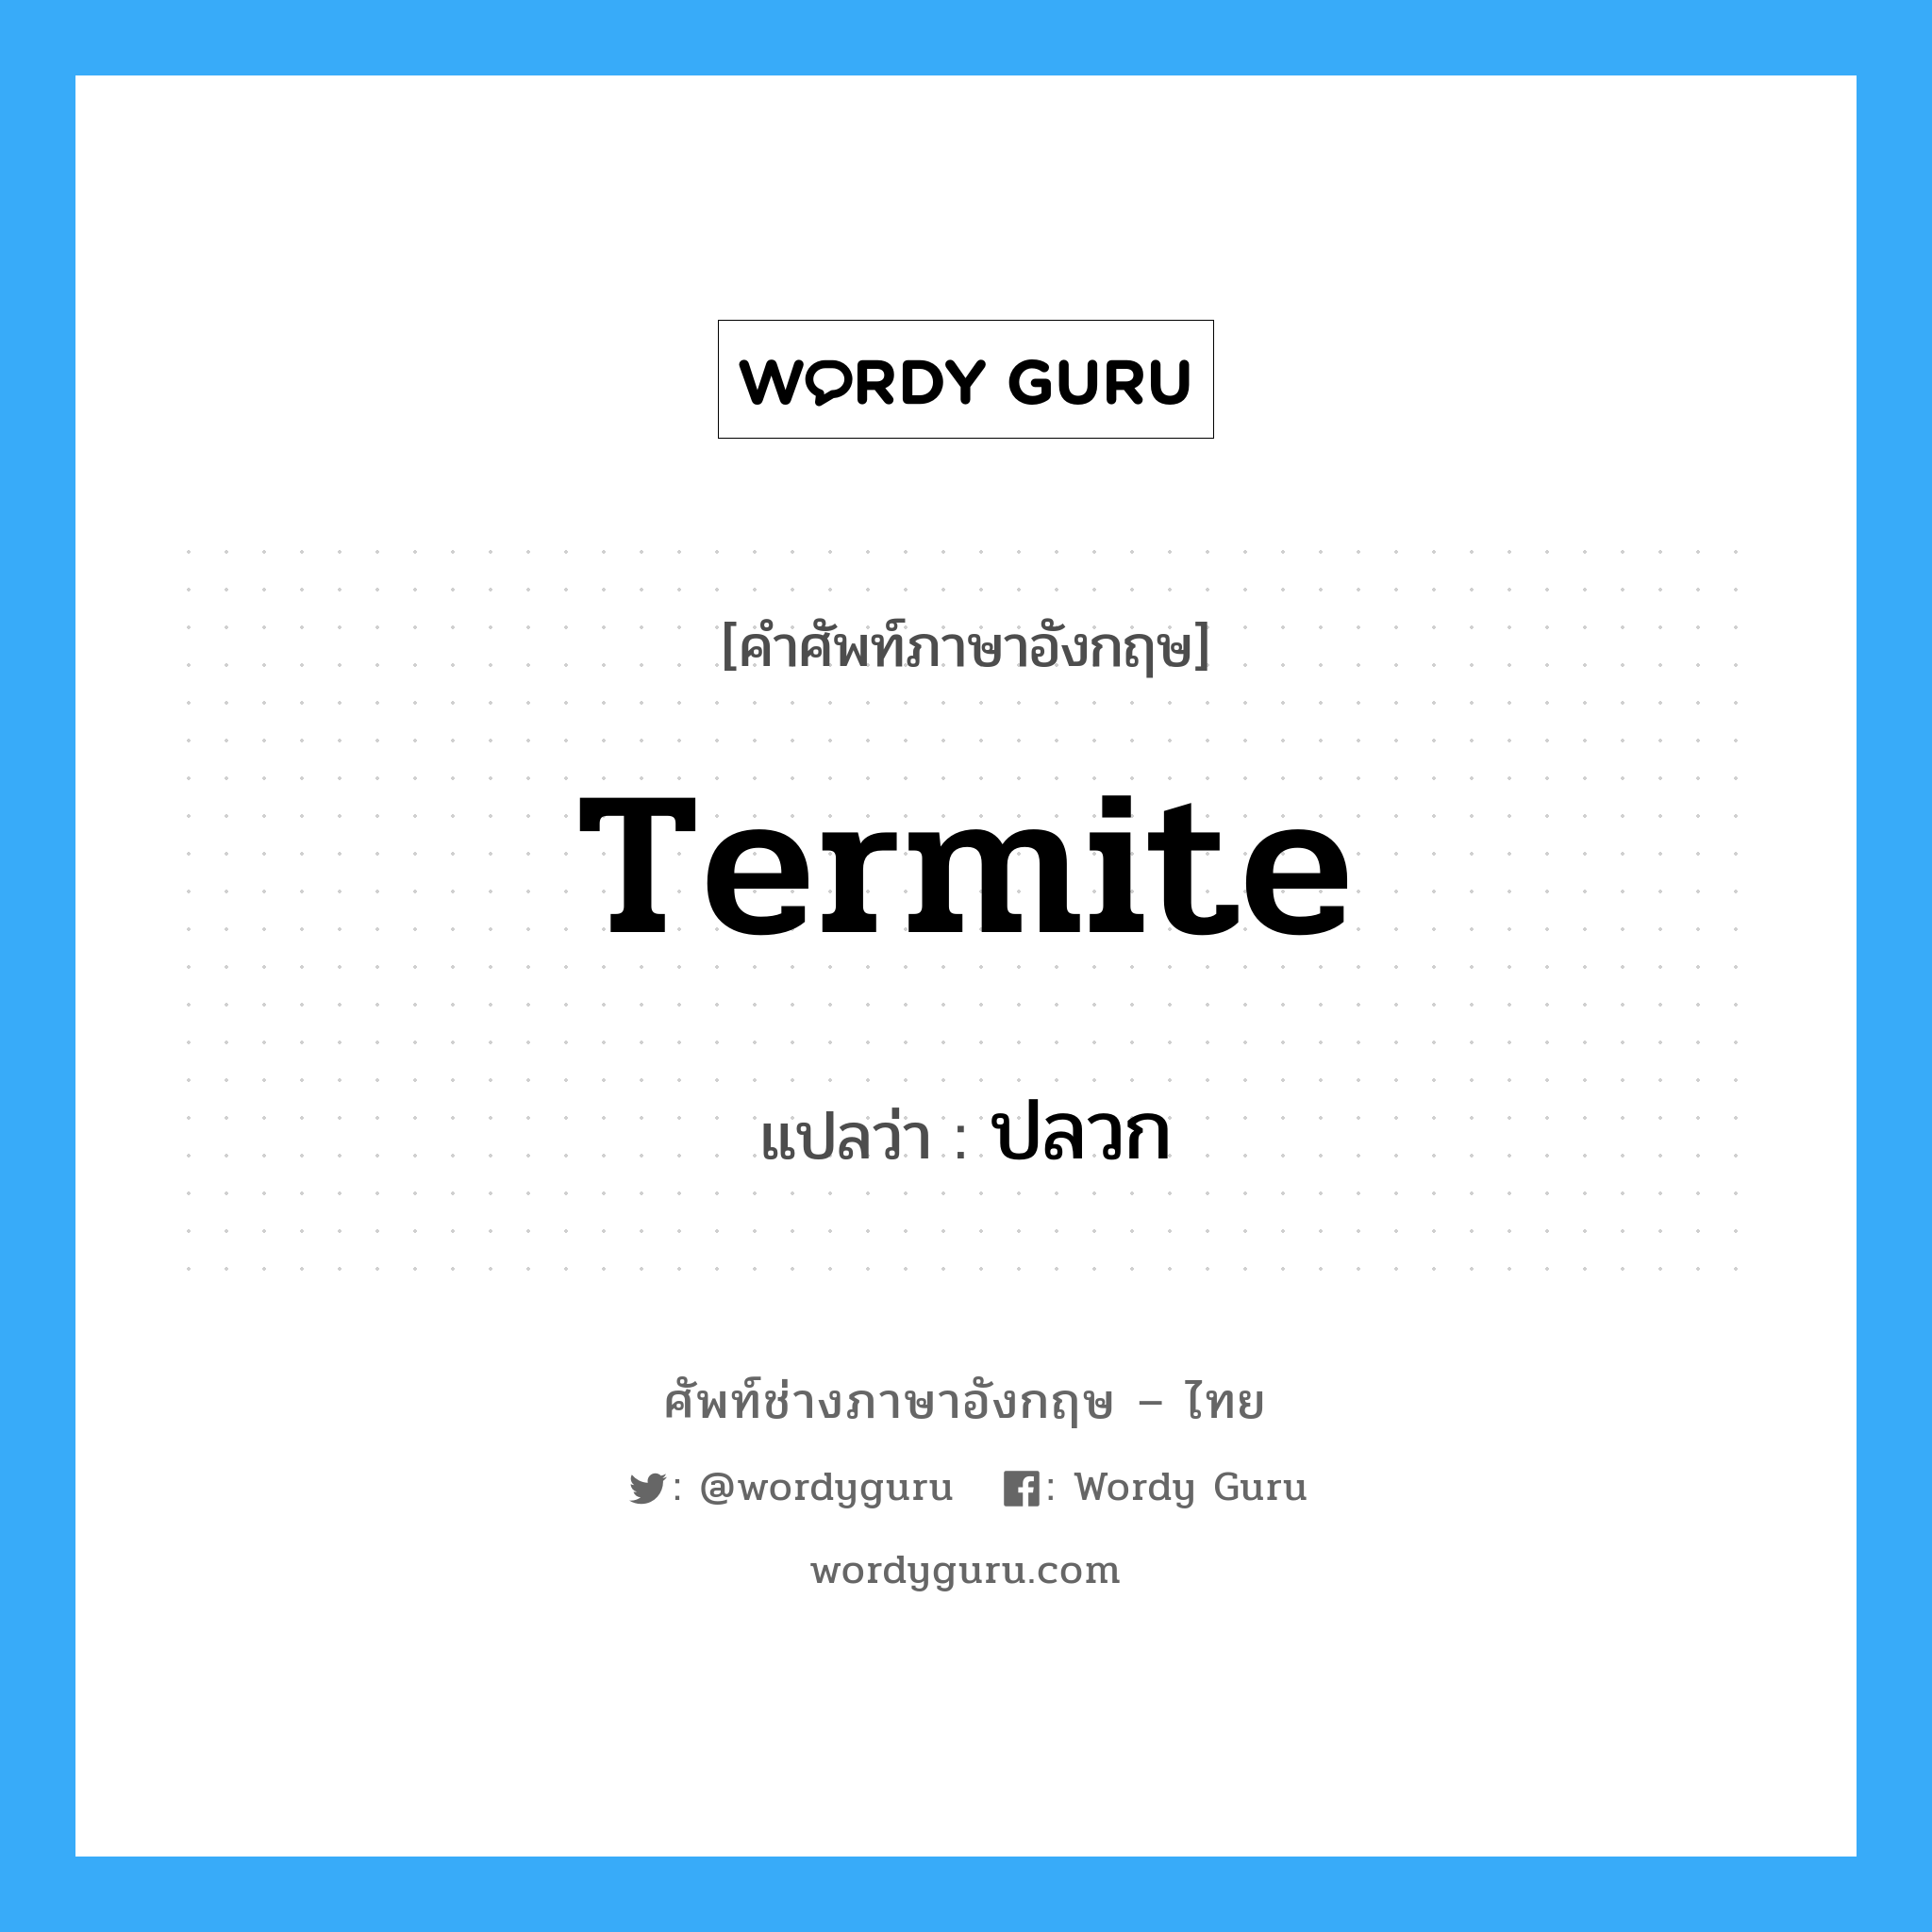 ปลวก ภาษาอังกฤษ?, คำศัพท์ช่างภาษาอังกฤษ - ไทย ปลวก คำศัพท์ภาษาอังกฤษ ปลวก แปลว่า termite